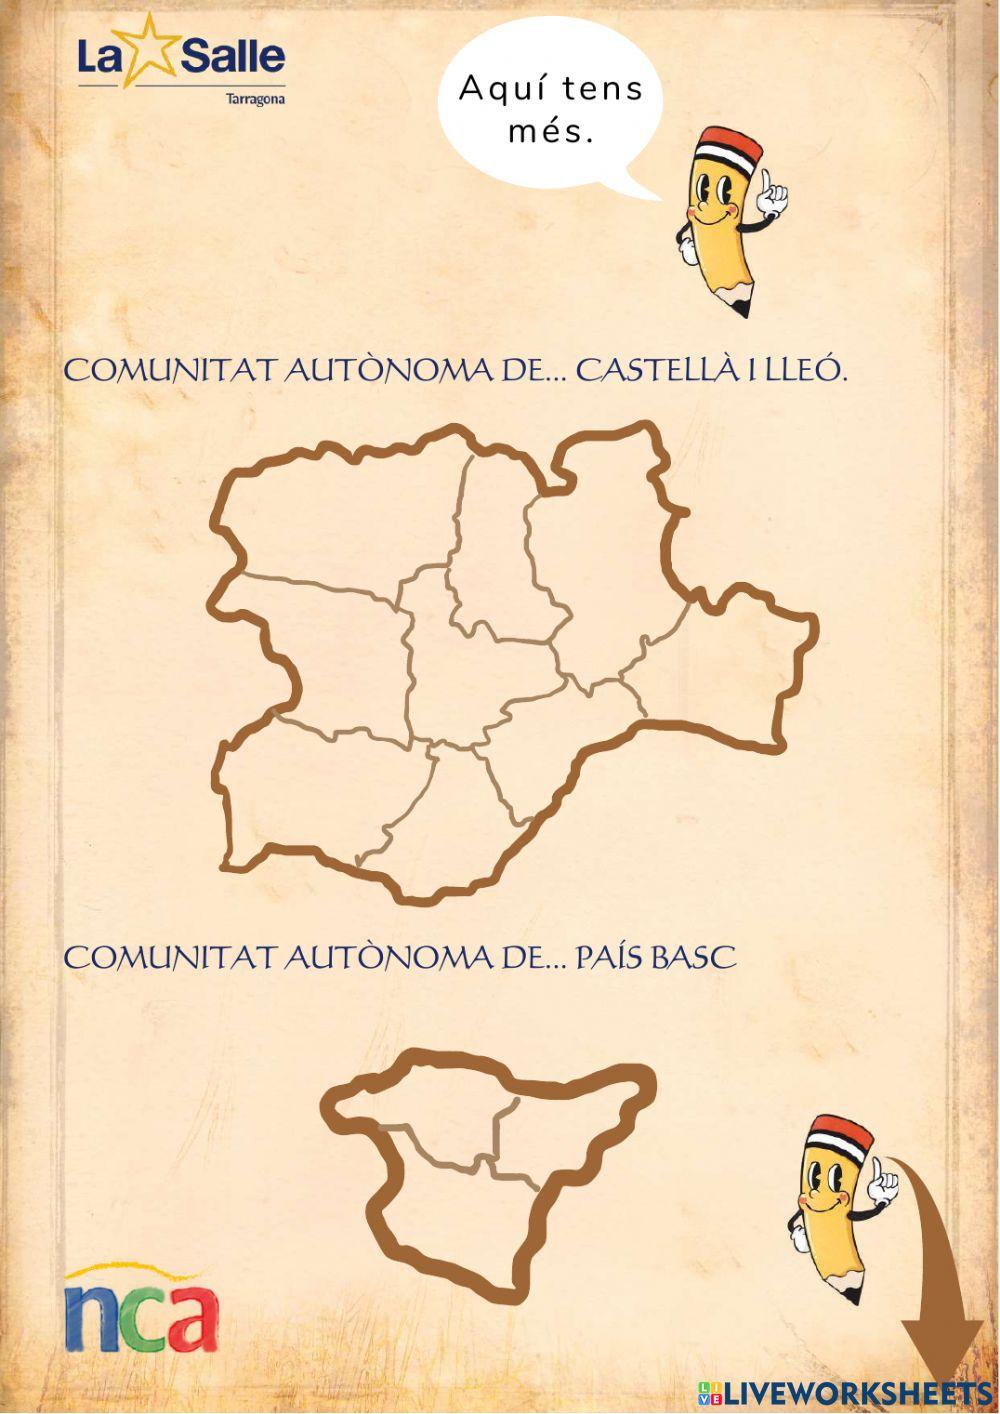 Les Comunitats Autònomes d'Espanya 14